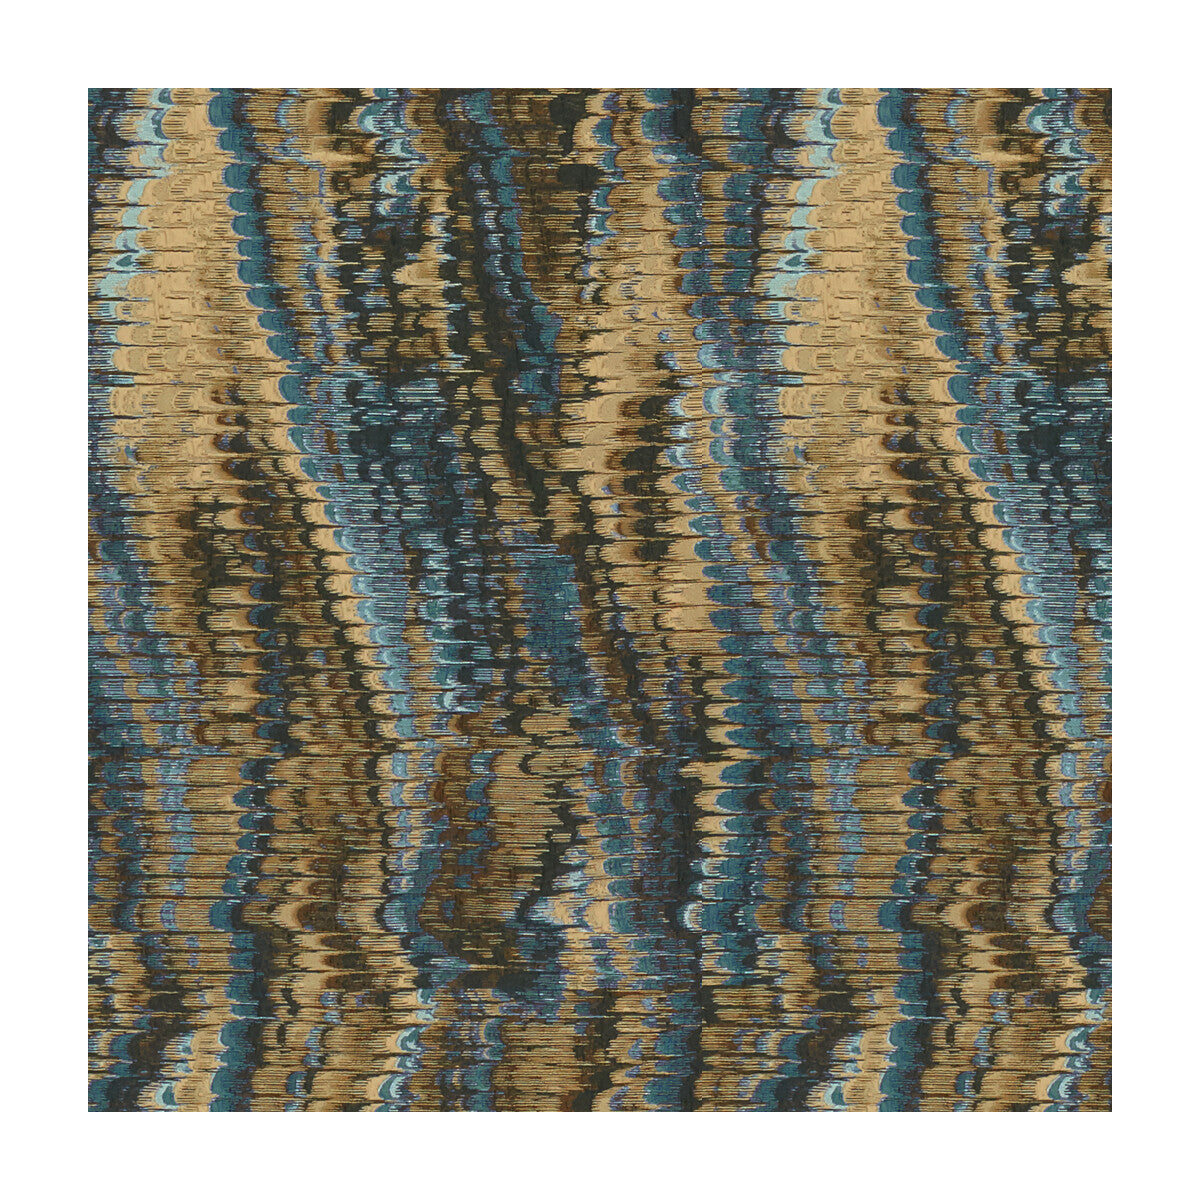 Kravet Design fabric in 34009-516 color - pattern 34009.516.0 - by Kravet Design